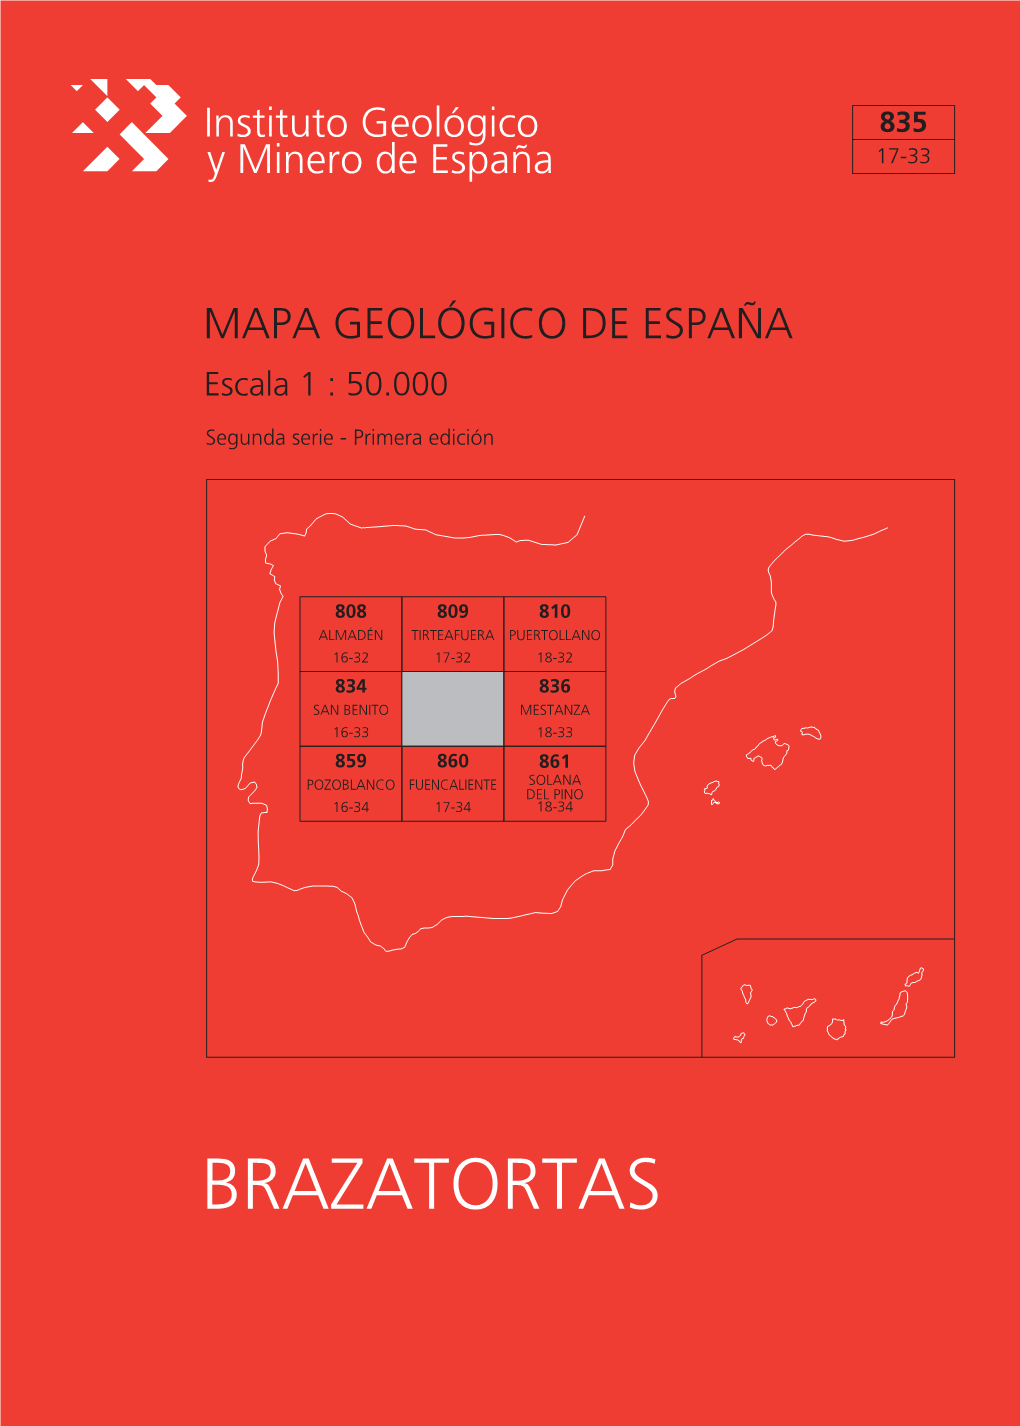 BRAZATORTAS MAPA GEOLÓGICO DE ESPAÑA Escala 1:50.000